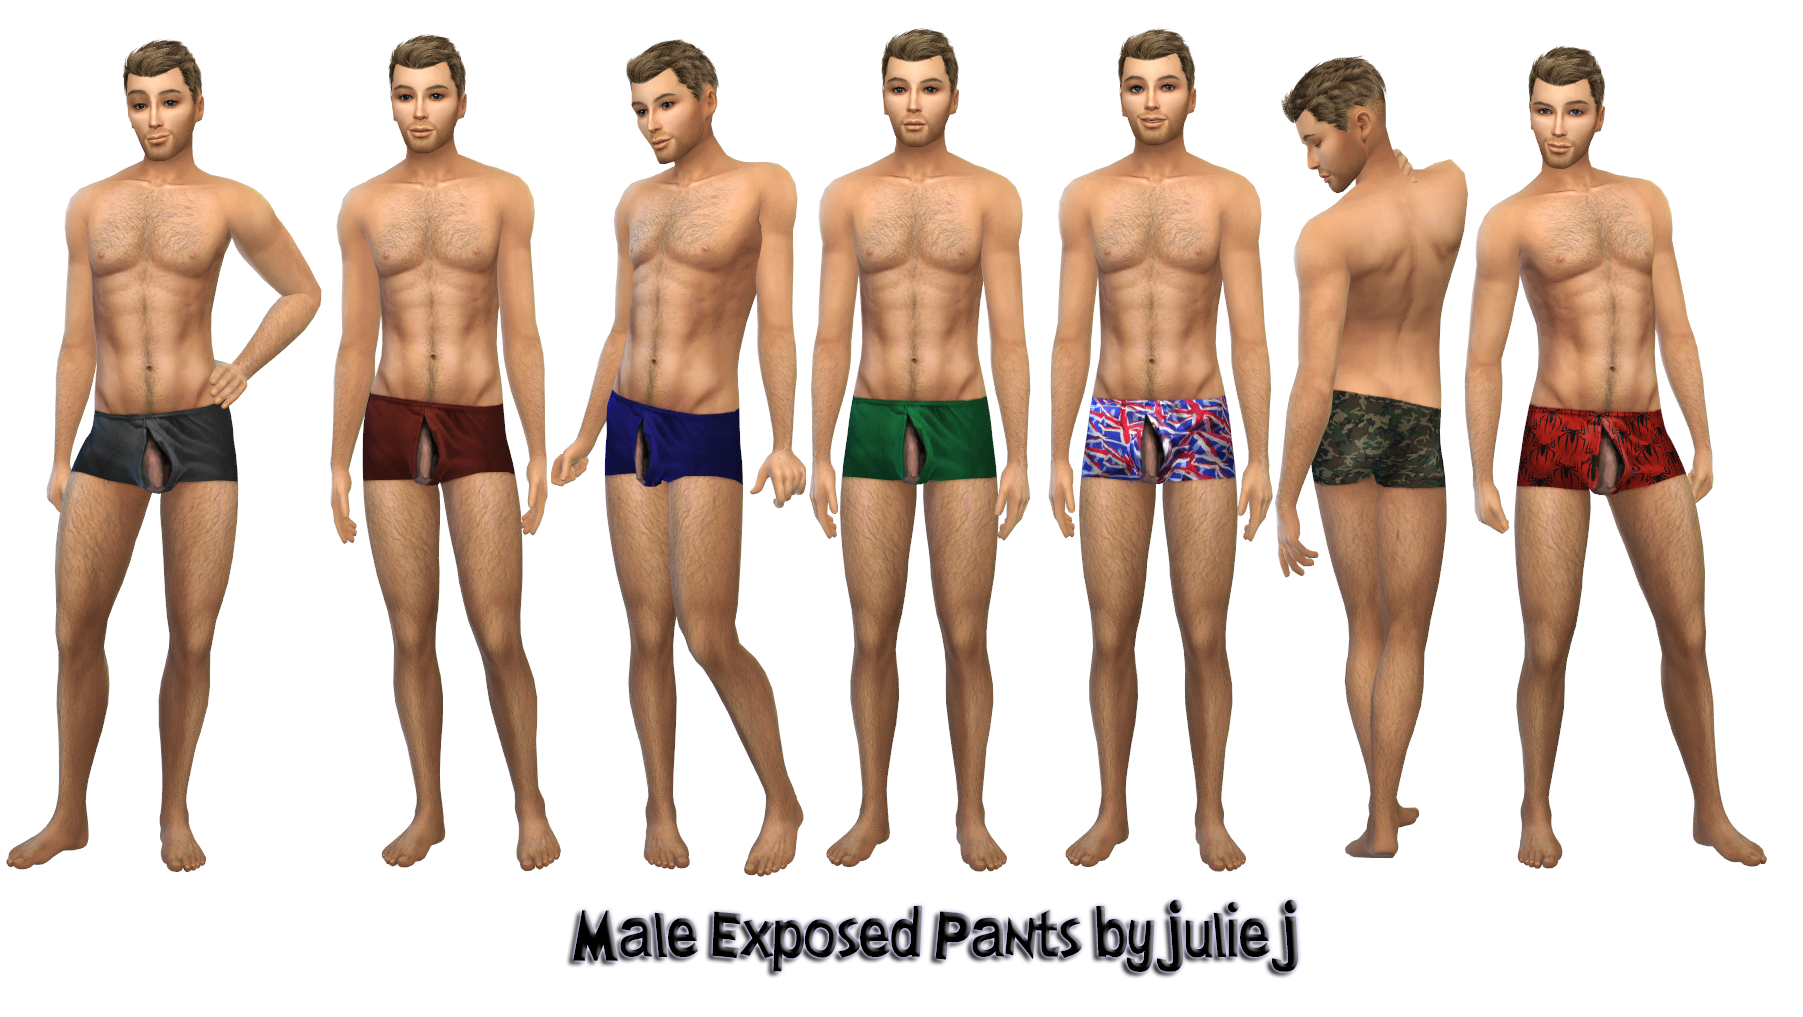 Iyileşmek Kokulu Kapmak Uyum Sağlamak Sil Atom Sims 4 Male Underwear Tina Smith